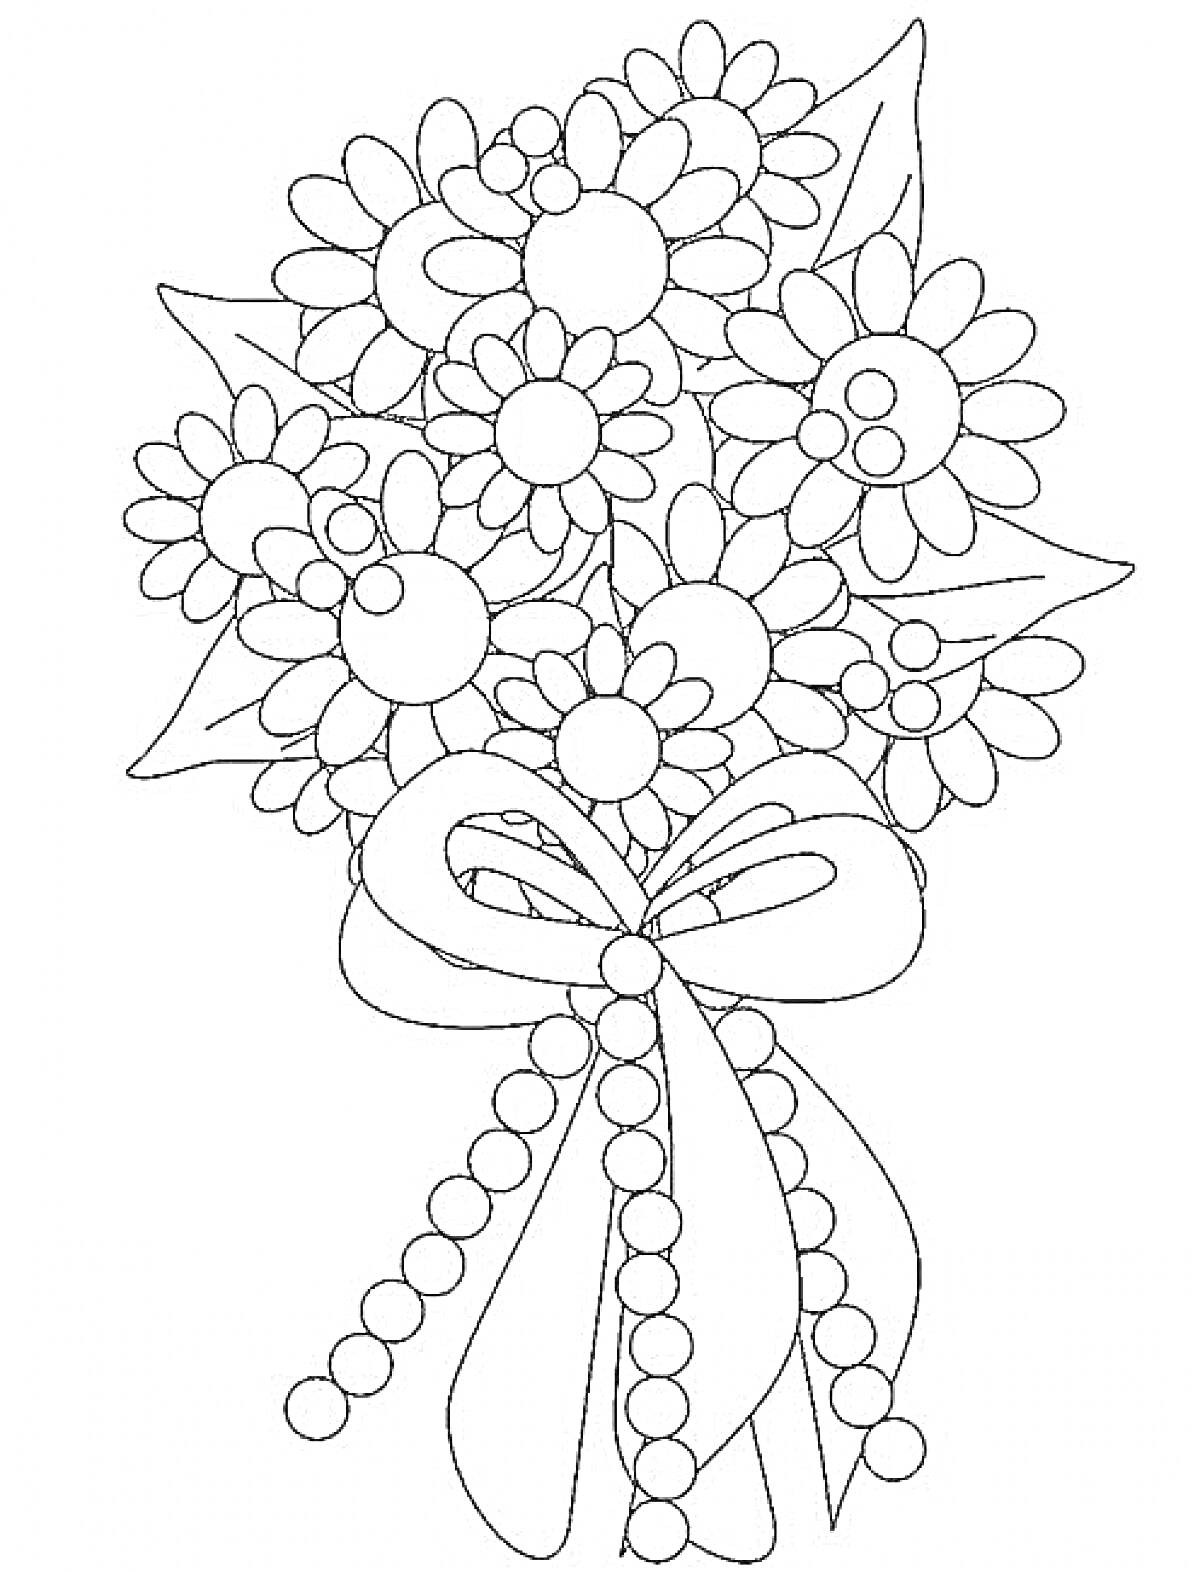 Раскраска Букет цветов с листьями, круглымы ягодами и бантом из ленты